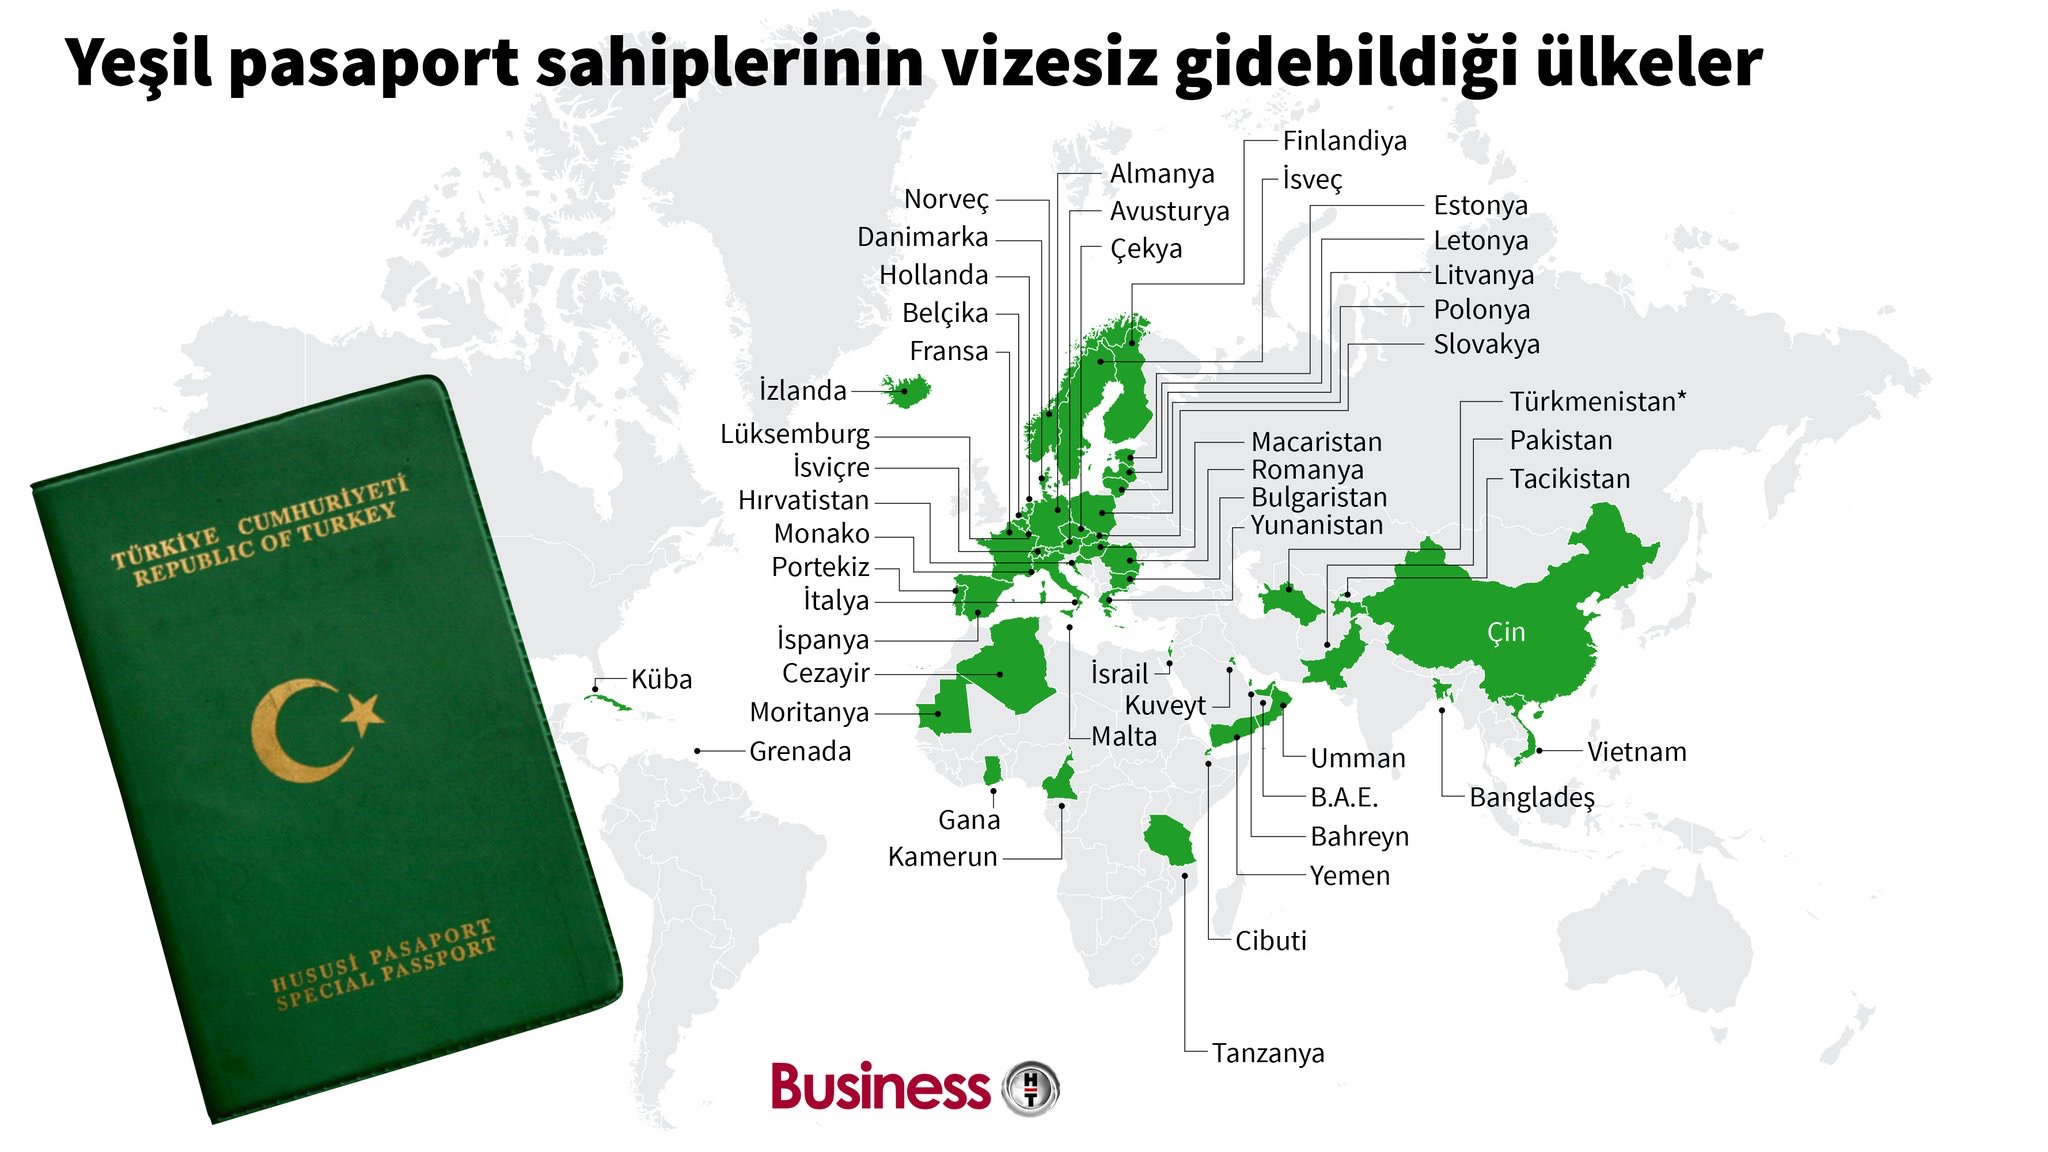 Yeşil pasaport süresi